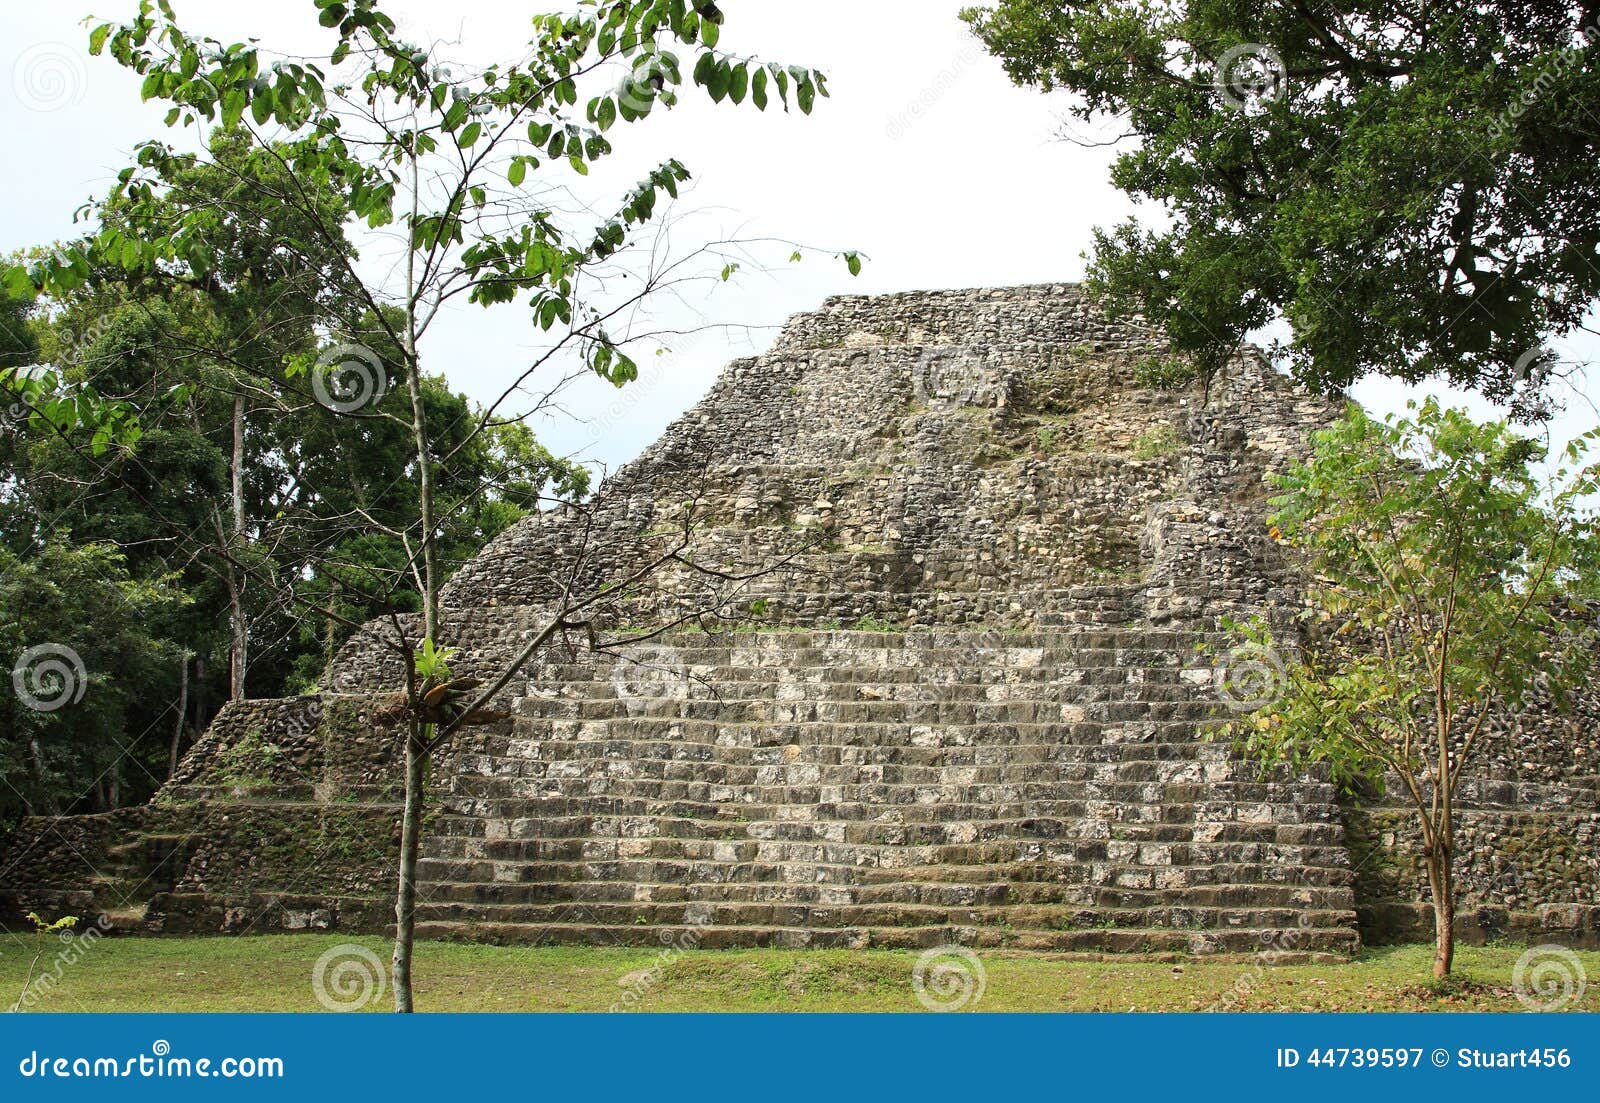 ruins of mayan temple at yaxha, guatemala